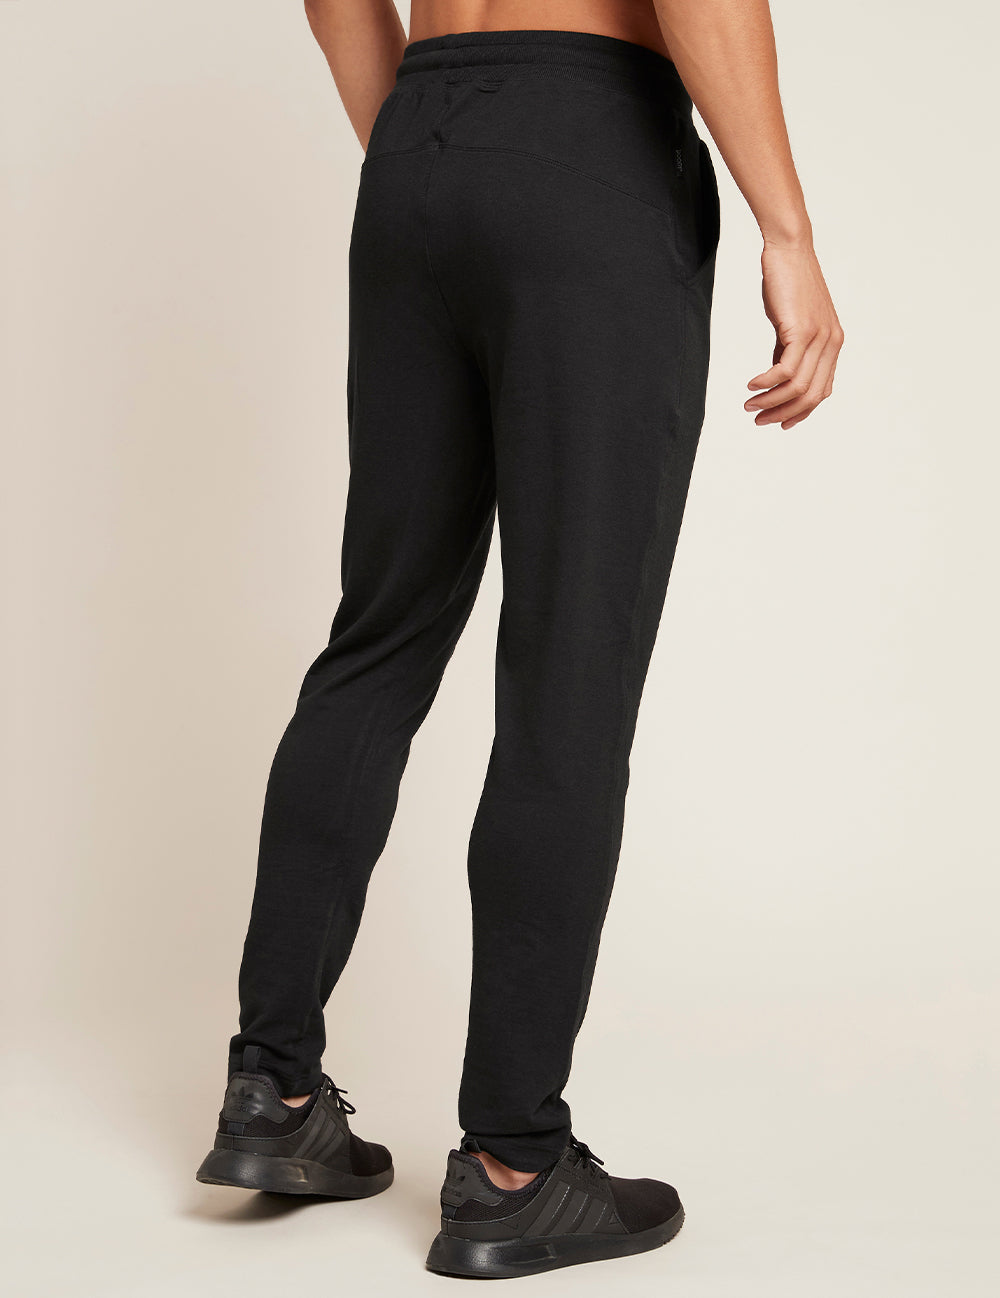 Men_s-Weekend-sweatpants-Black-Back.jpg